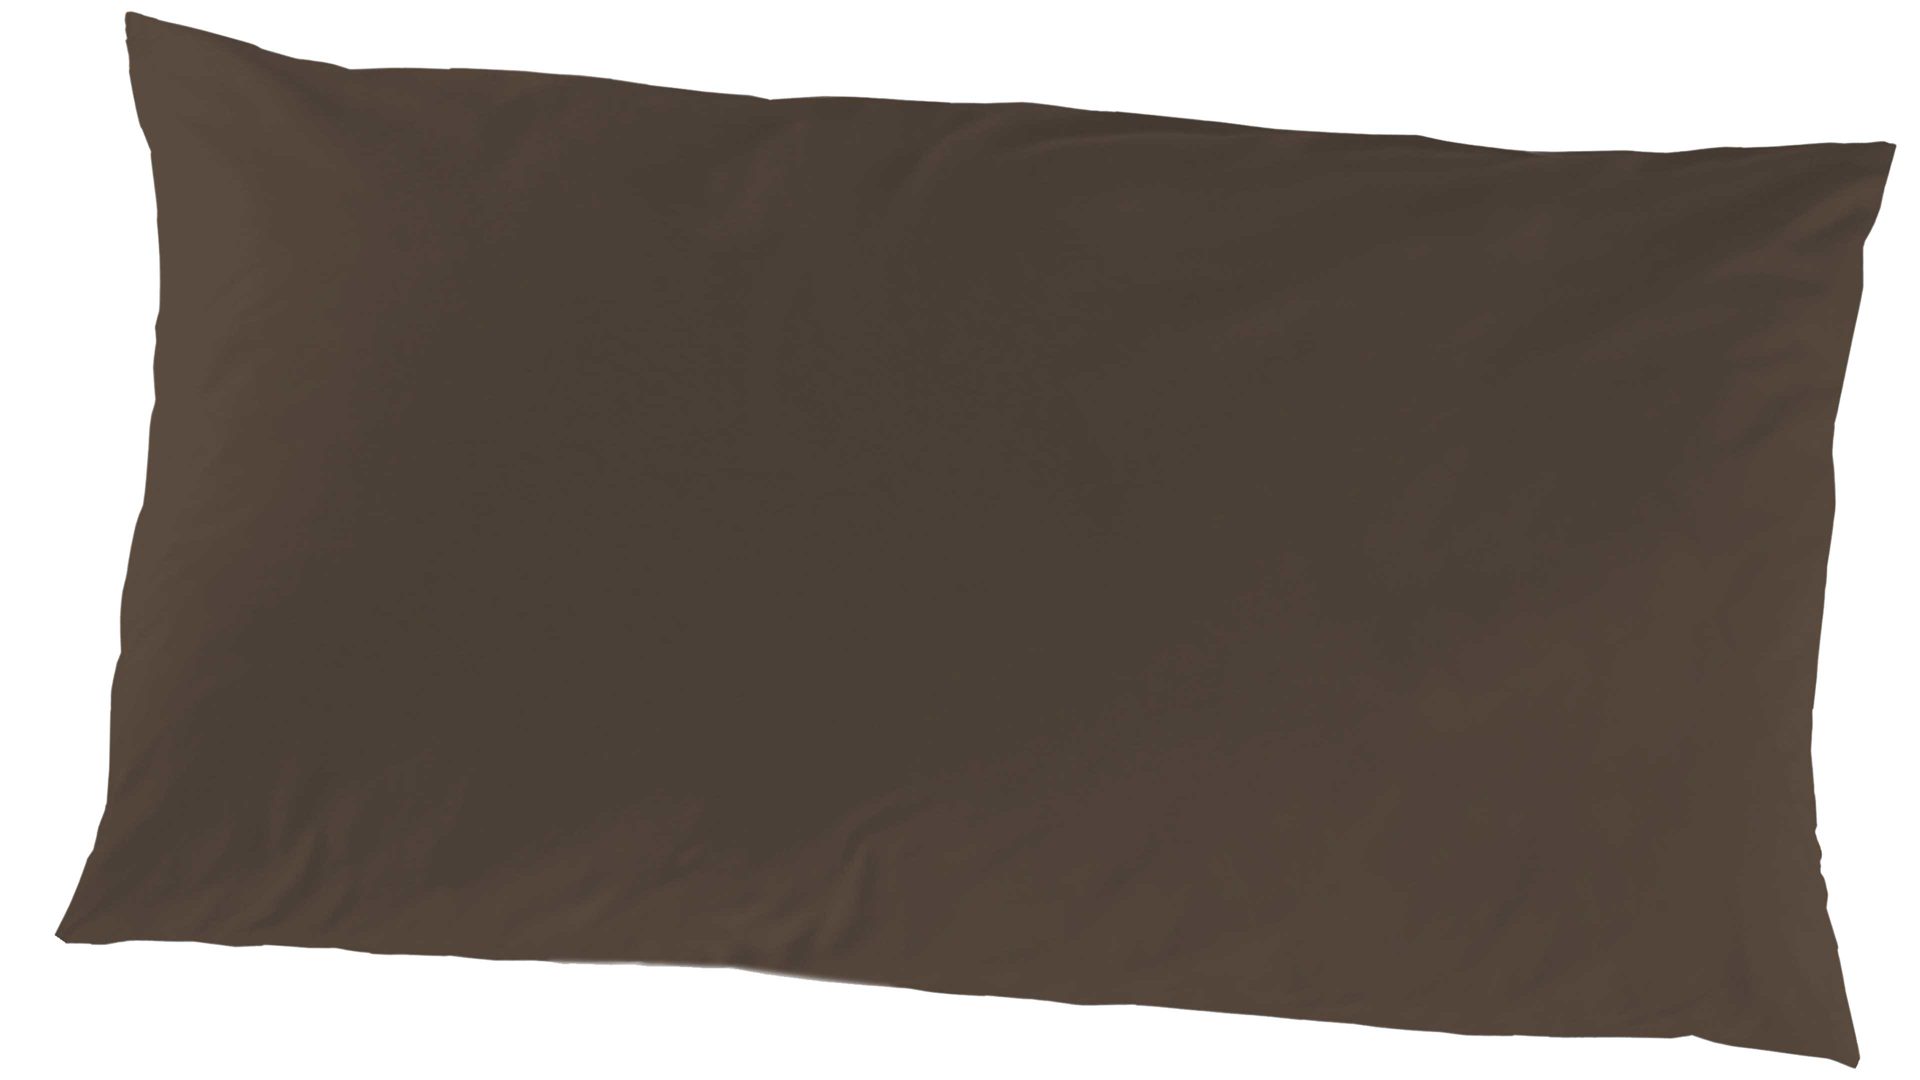 Kissenbezug /-hülle H.g. hahn haustextilien aus Stoff in Dunkelbraun HAHN Luxus-Satin-Kopfkissenbezug Sempre brauner Baumwollsatin – ca. 40 x 80 cm